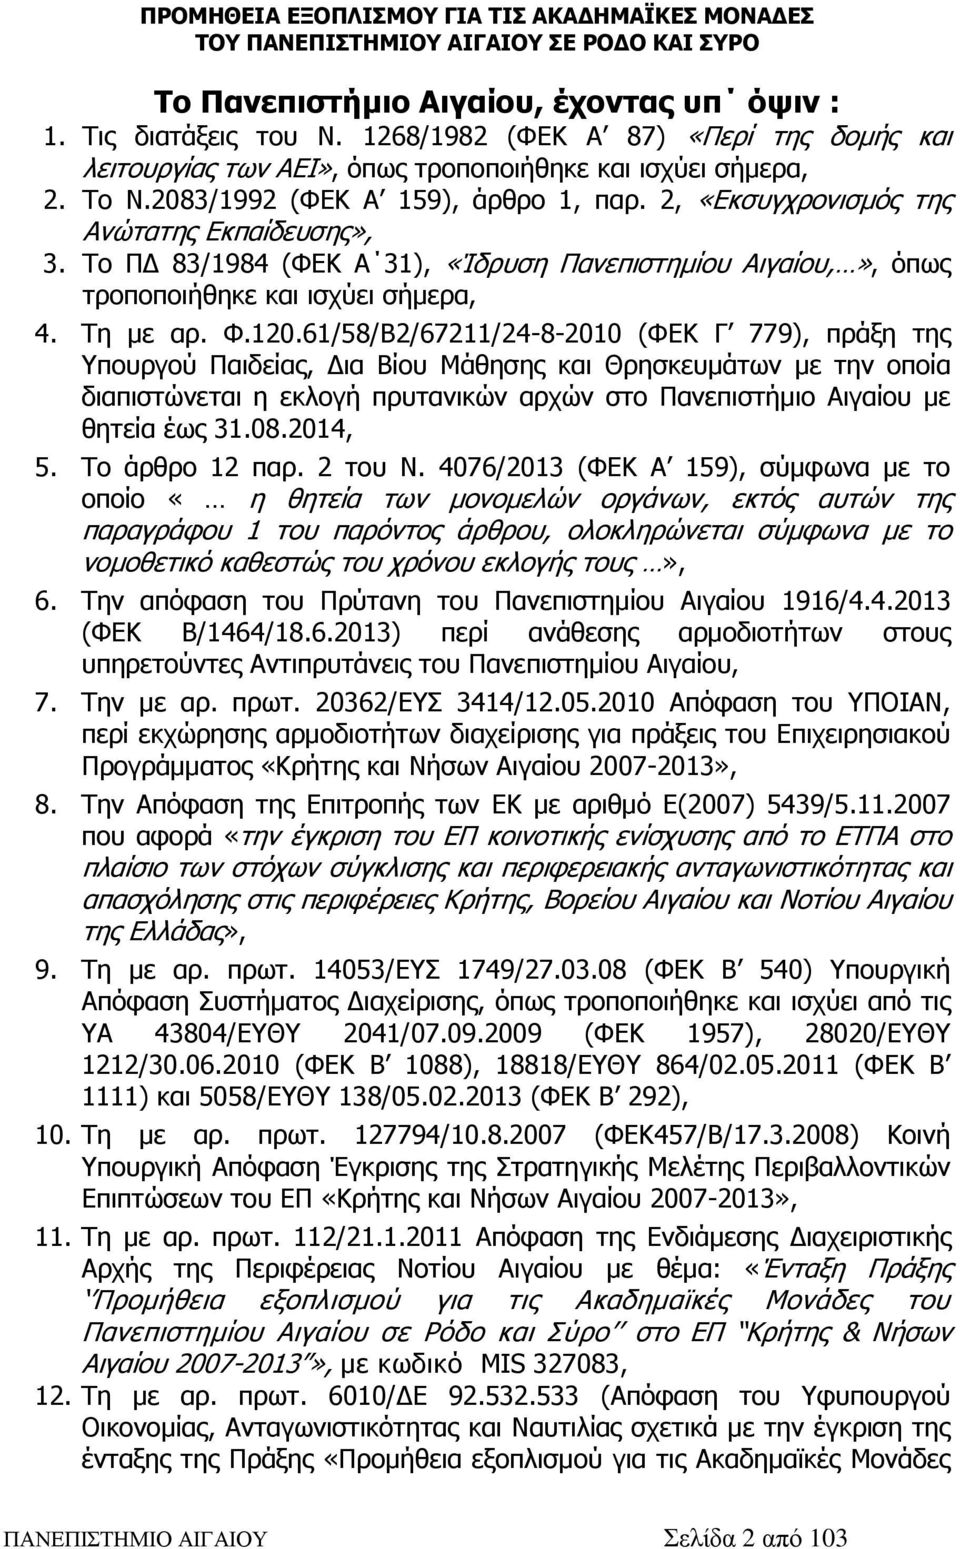 120.61/58/Β2/67211/24-8-2010 (ΦΕΚ Γ 779), πράξη της Υπουργού Παιδείας, Δια Βίου Μάθησης και Θρησκευμάτων με την οποία διαπιστώνεται η εκλογή πρυτανικών αρχών στο Πανεπιστήμιο Αιγαίου με θητεία έως 31.